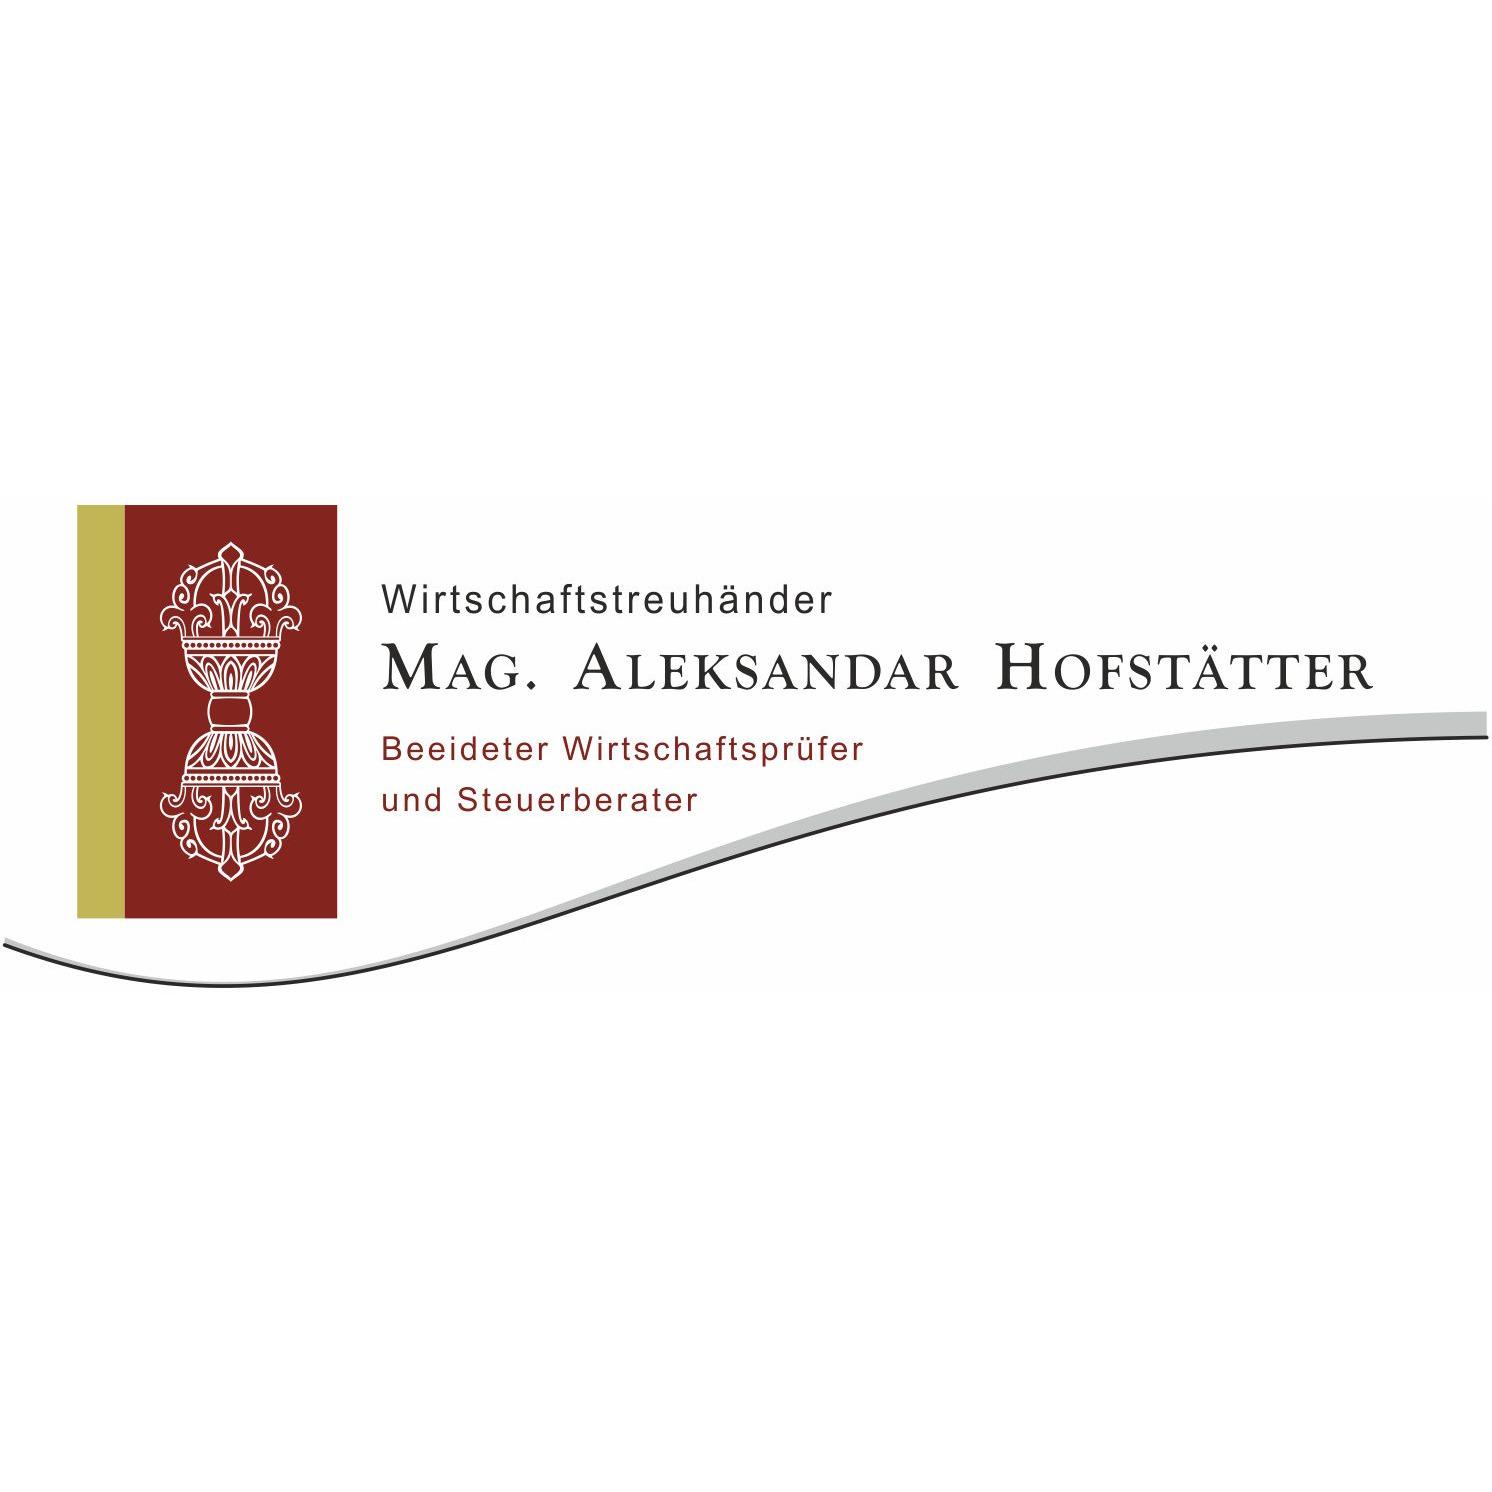 Mag. Aleksandar Hofstätter